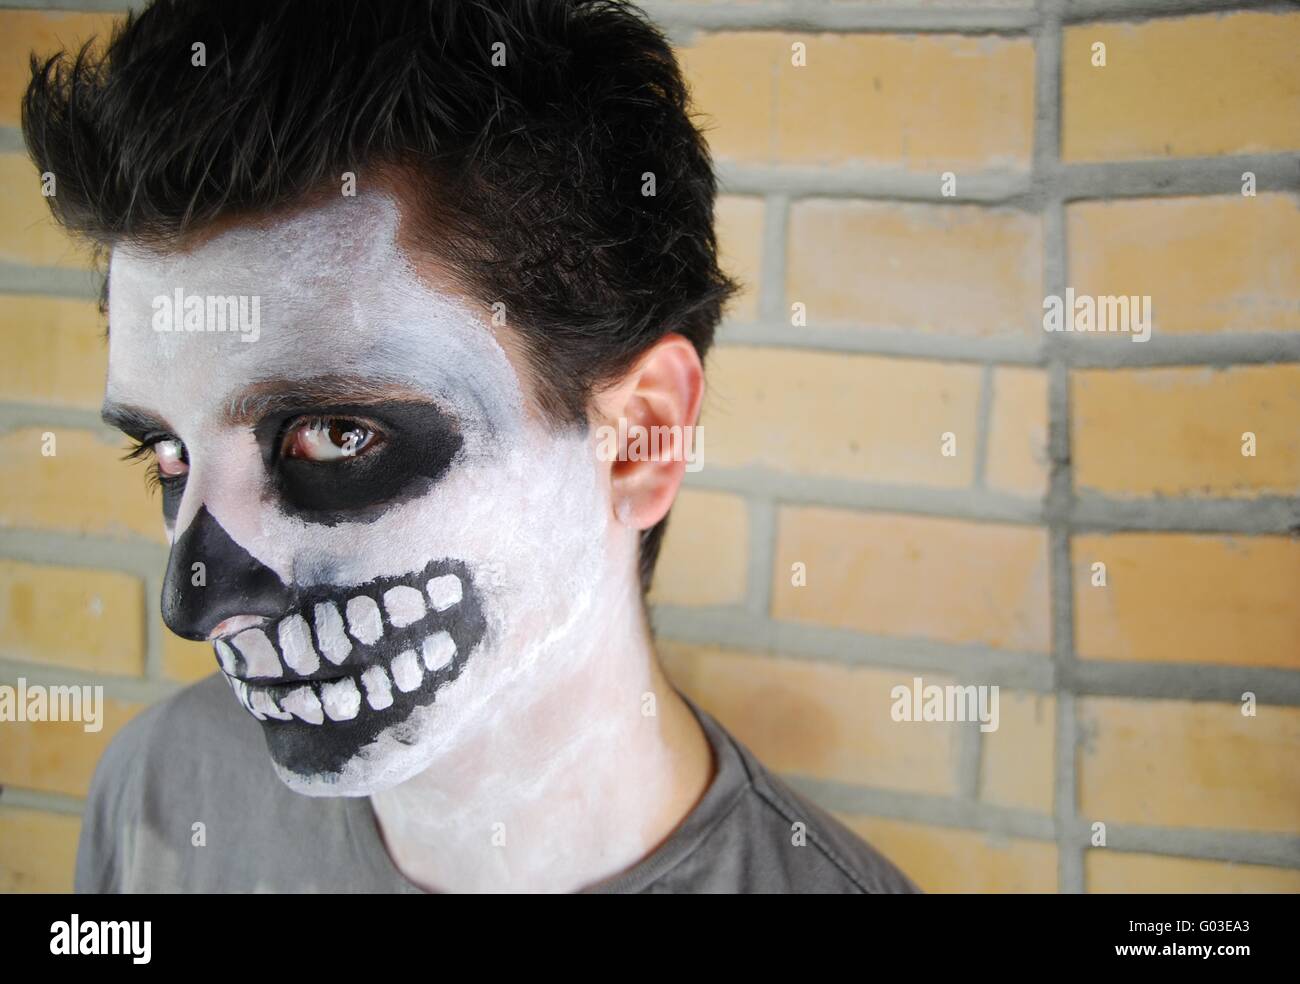 Ritratto di uno scheletro creepy guy perfetto per carnevale (muro di mattoni di background) Foto Stock